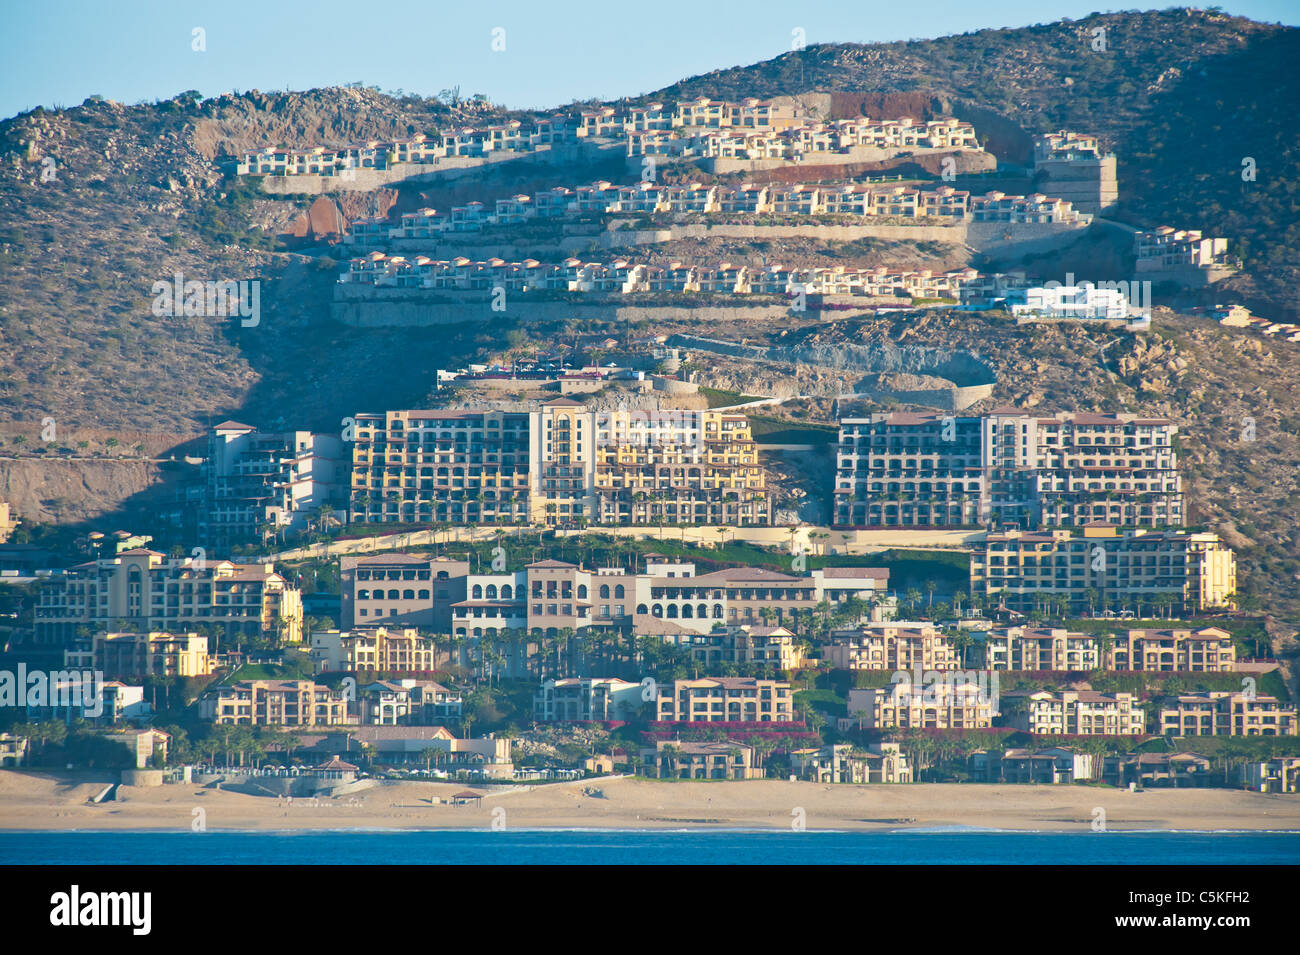 Centinaia di appartamenti, alberghi, case di città salire la pendenza dell'Oceano Pacifico a Cabo San Lucas, Messico. Foto Stock